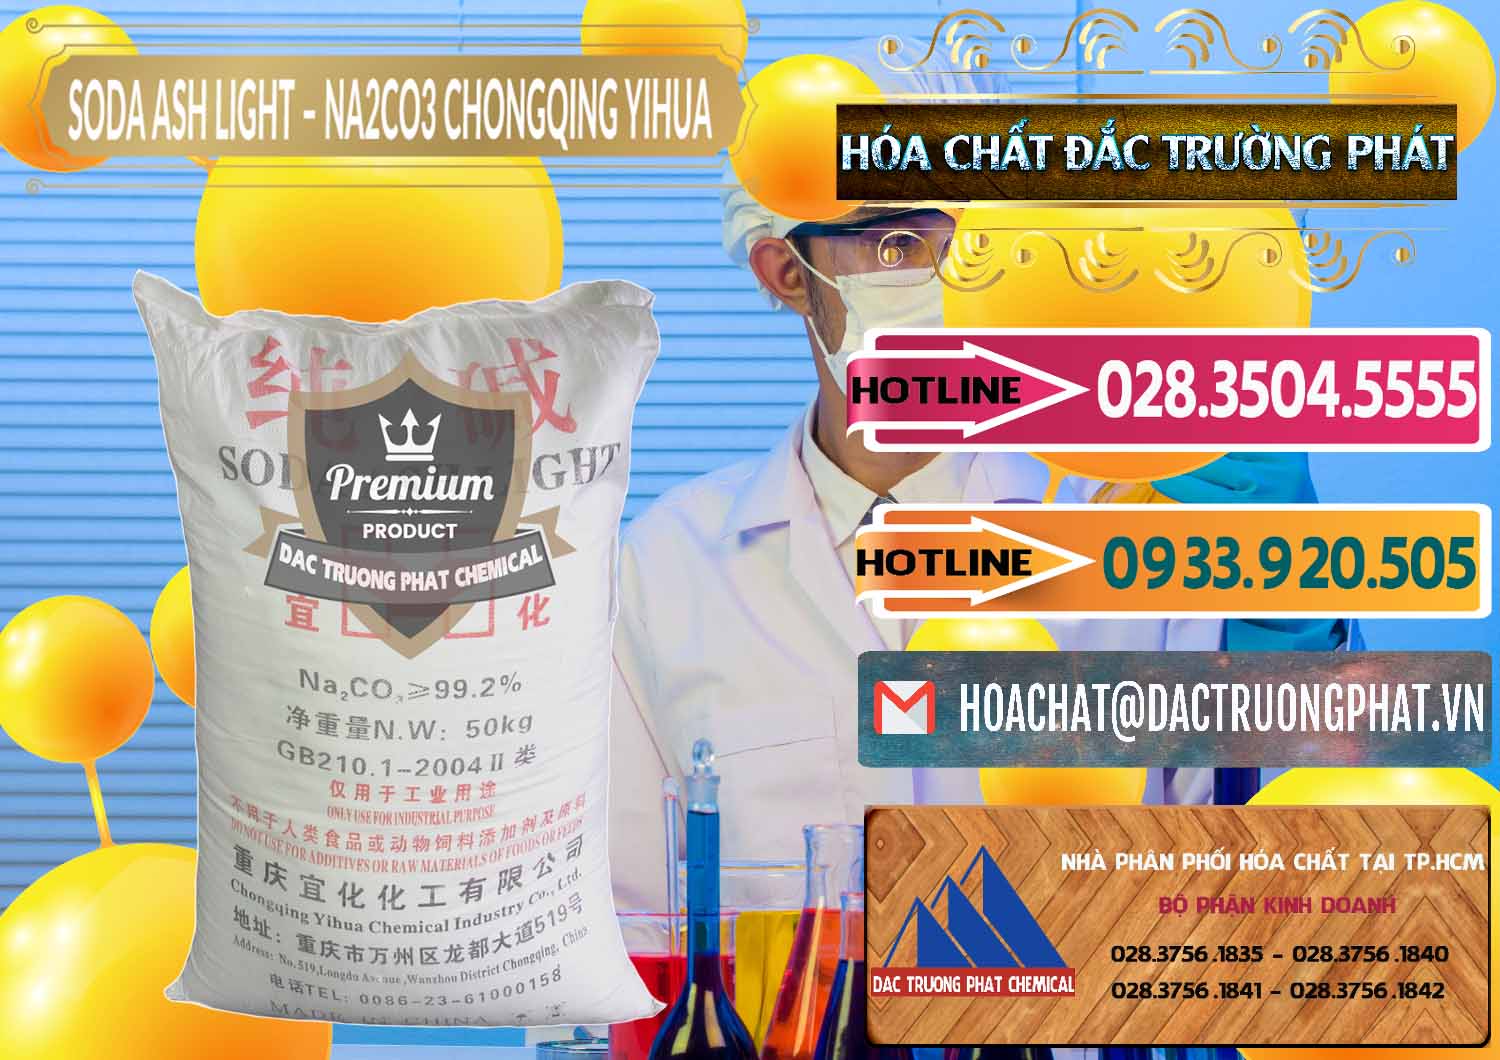 Cty cung cấp và bán Soda Ash Light - NA2CO3 Chongqing Yihua Trung Quốc China - 0129 - Nơi phân phối - cung cấp hóa chất tại TP.HCM - dactruongphat.vn